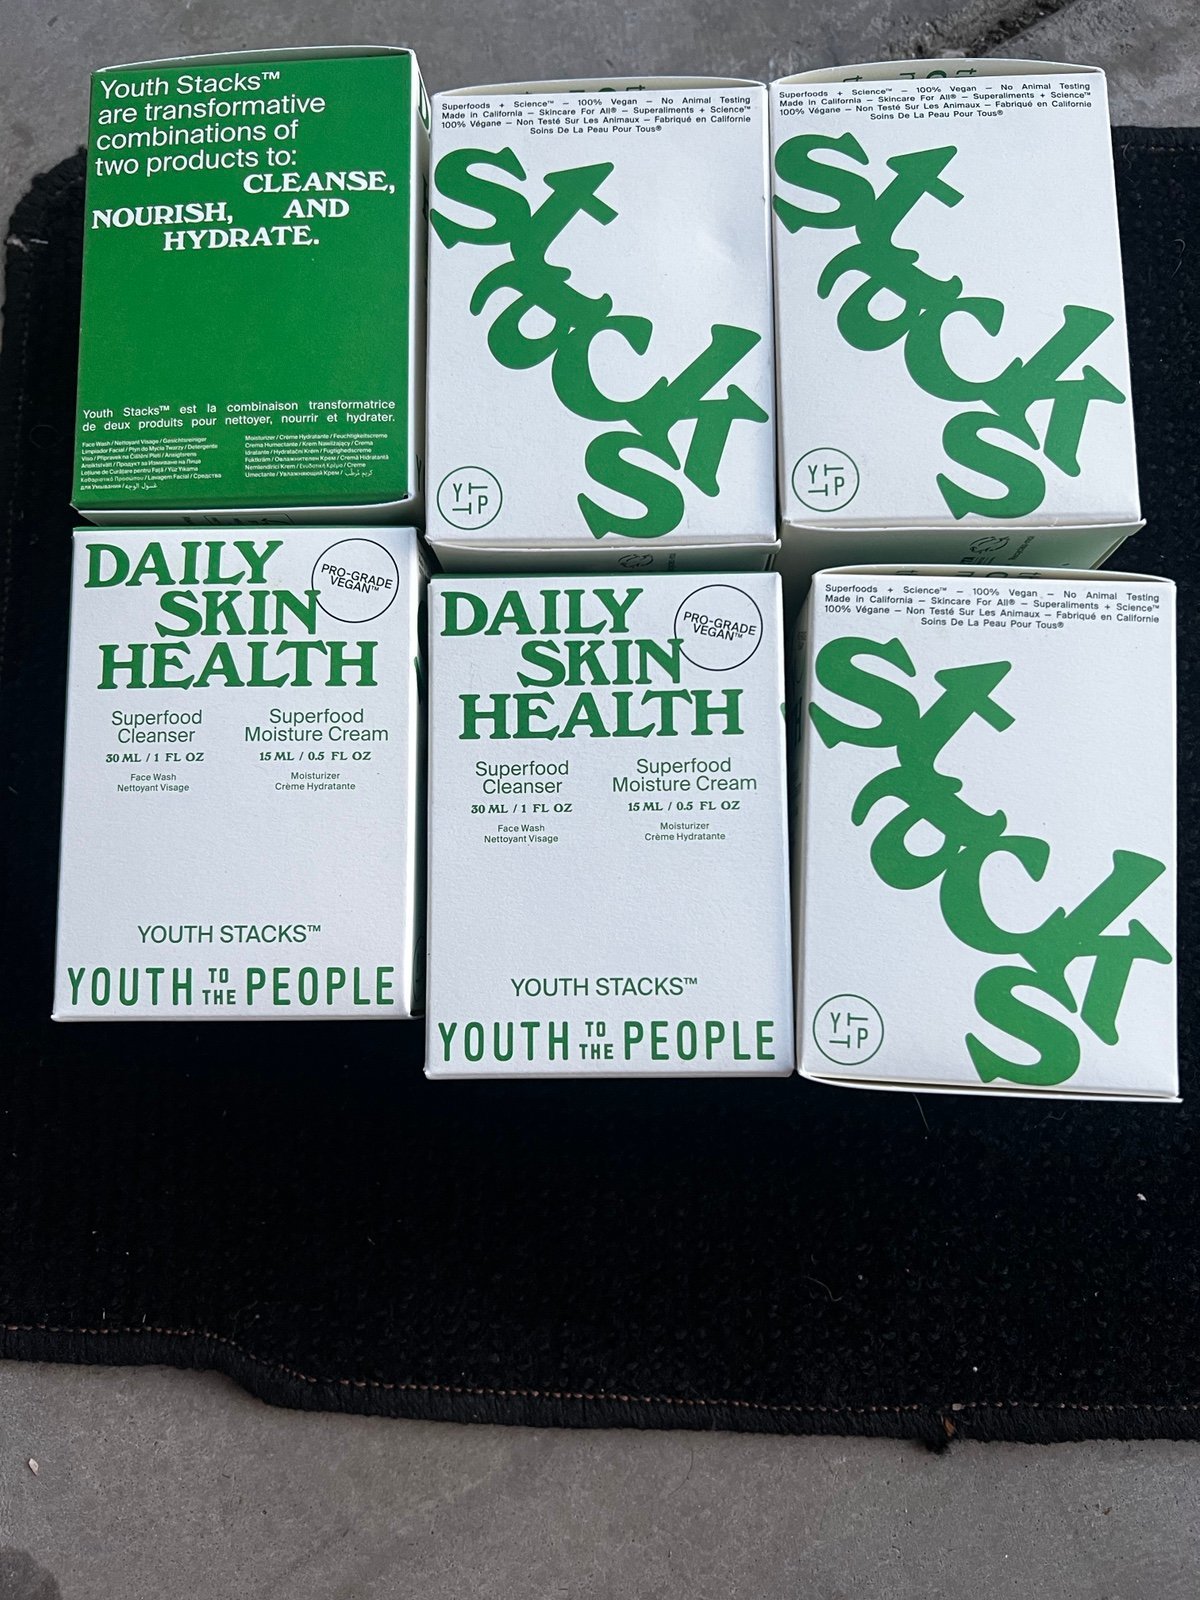 Daily skin health 2HMAWcc5U